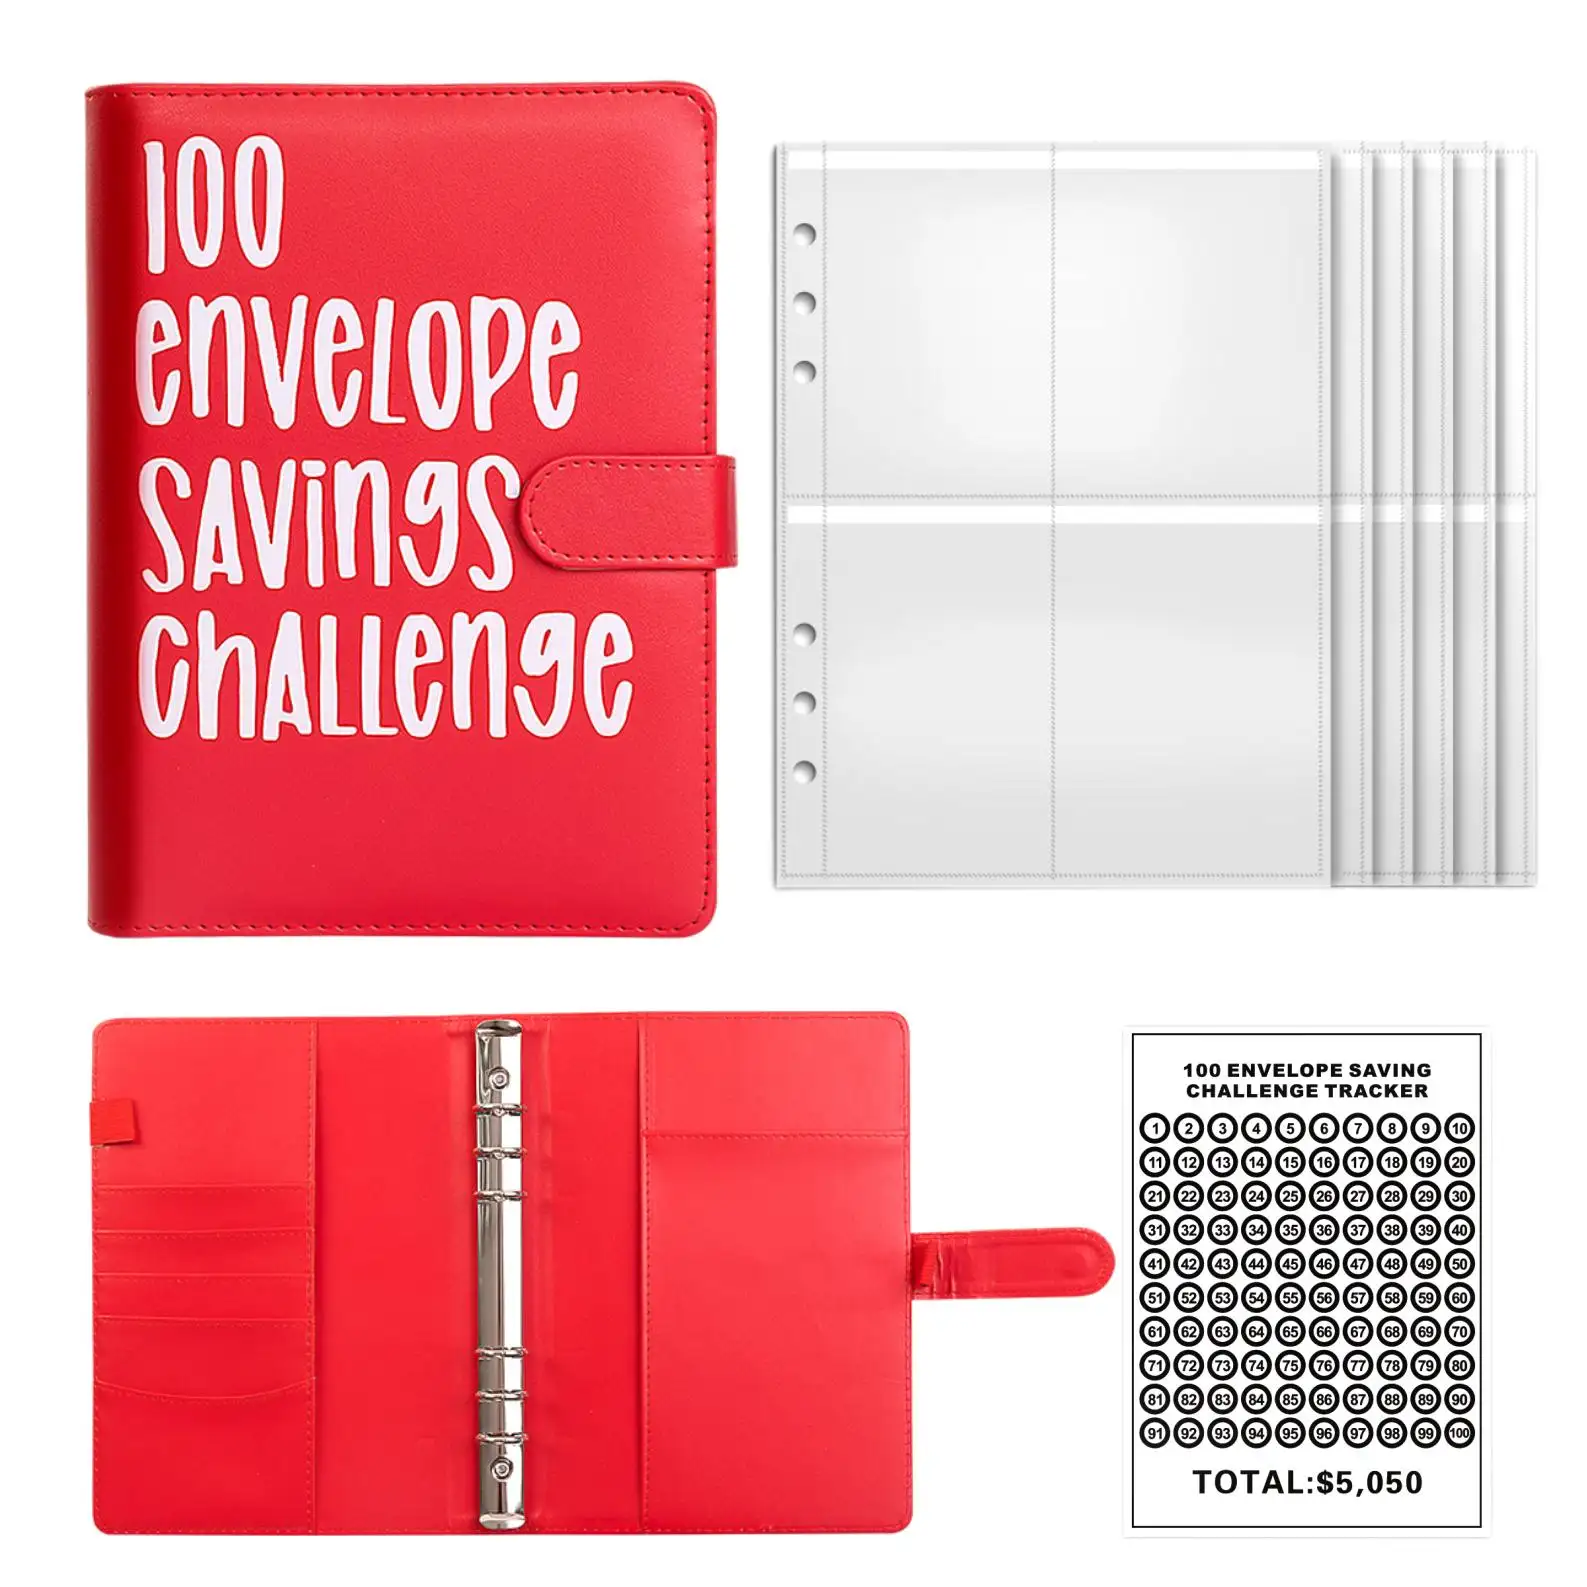 100 Envelopes Livro de desafio para economizar dinheiro para planejar e economizar $5050 Envelope economizador desafio fichário de orçamento com envelopes